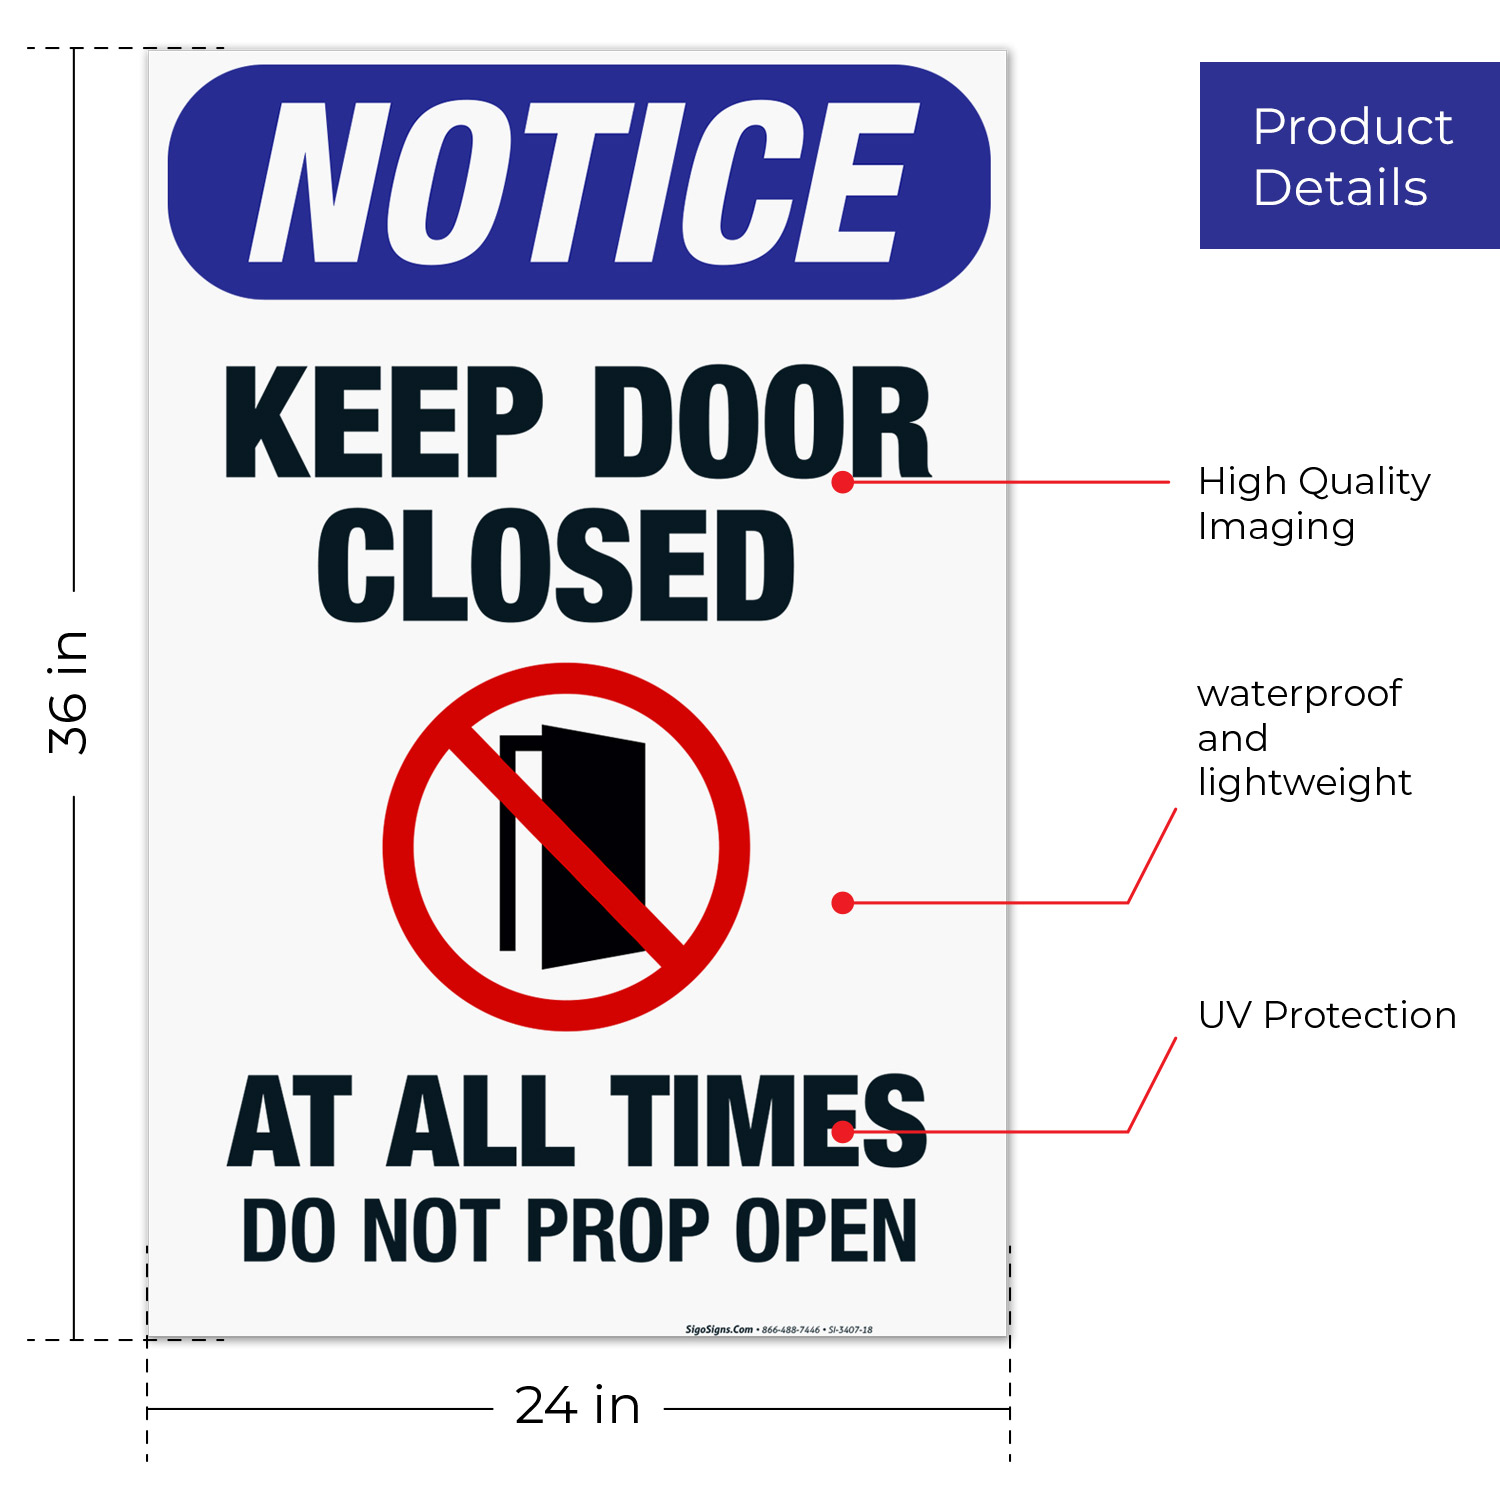 Vertical Please Do Not Lock The Door Sign - OSHA NOTICE